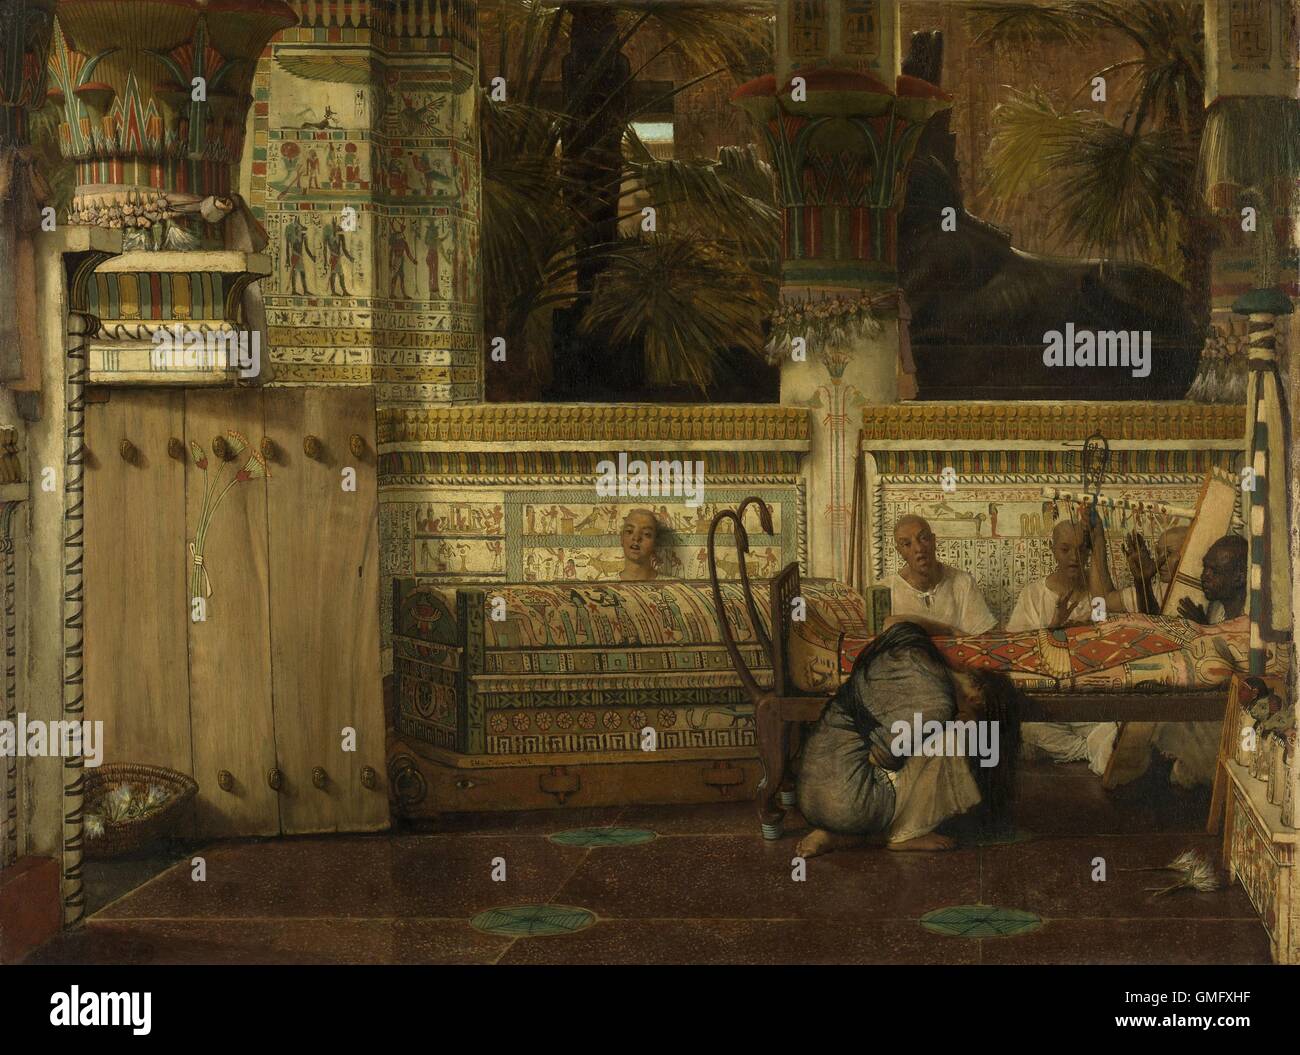 Vedova egiziano, da Lawrence Alma tadema, 1872, Inglese pittura ad olio su tela. Donna piange presso la mummia interno caso di suo marito. I sacerdoti e i cantanti e i dettagli architettonici arricchiscono la scena (BSLOC 2016 2 241) Foto Stock